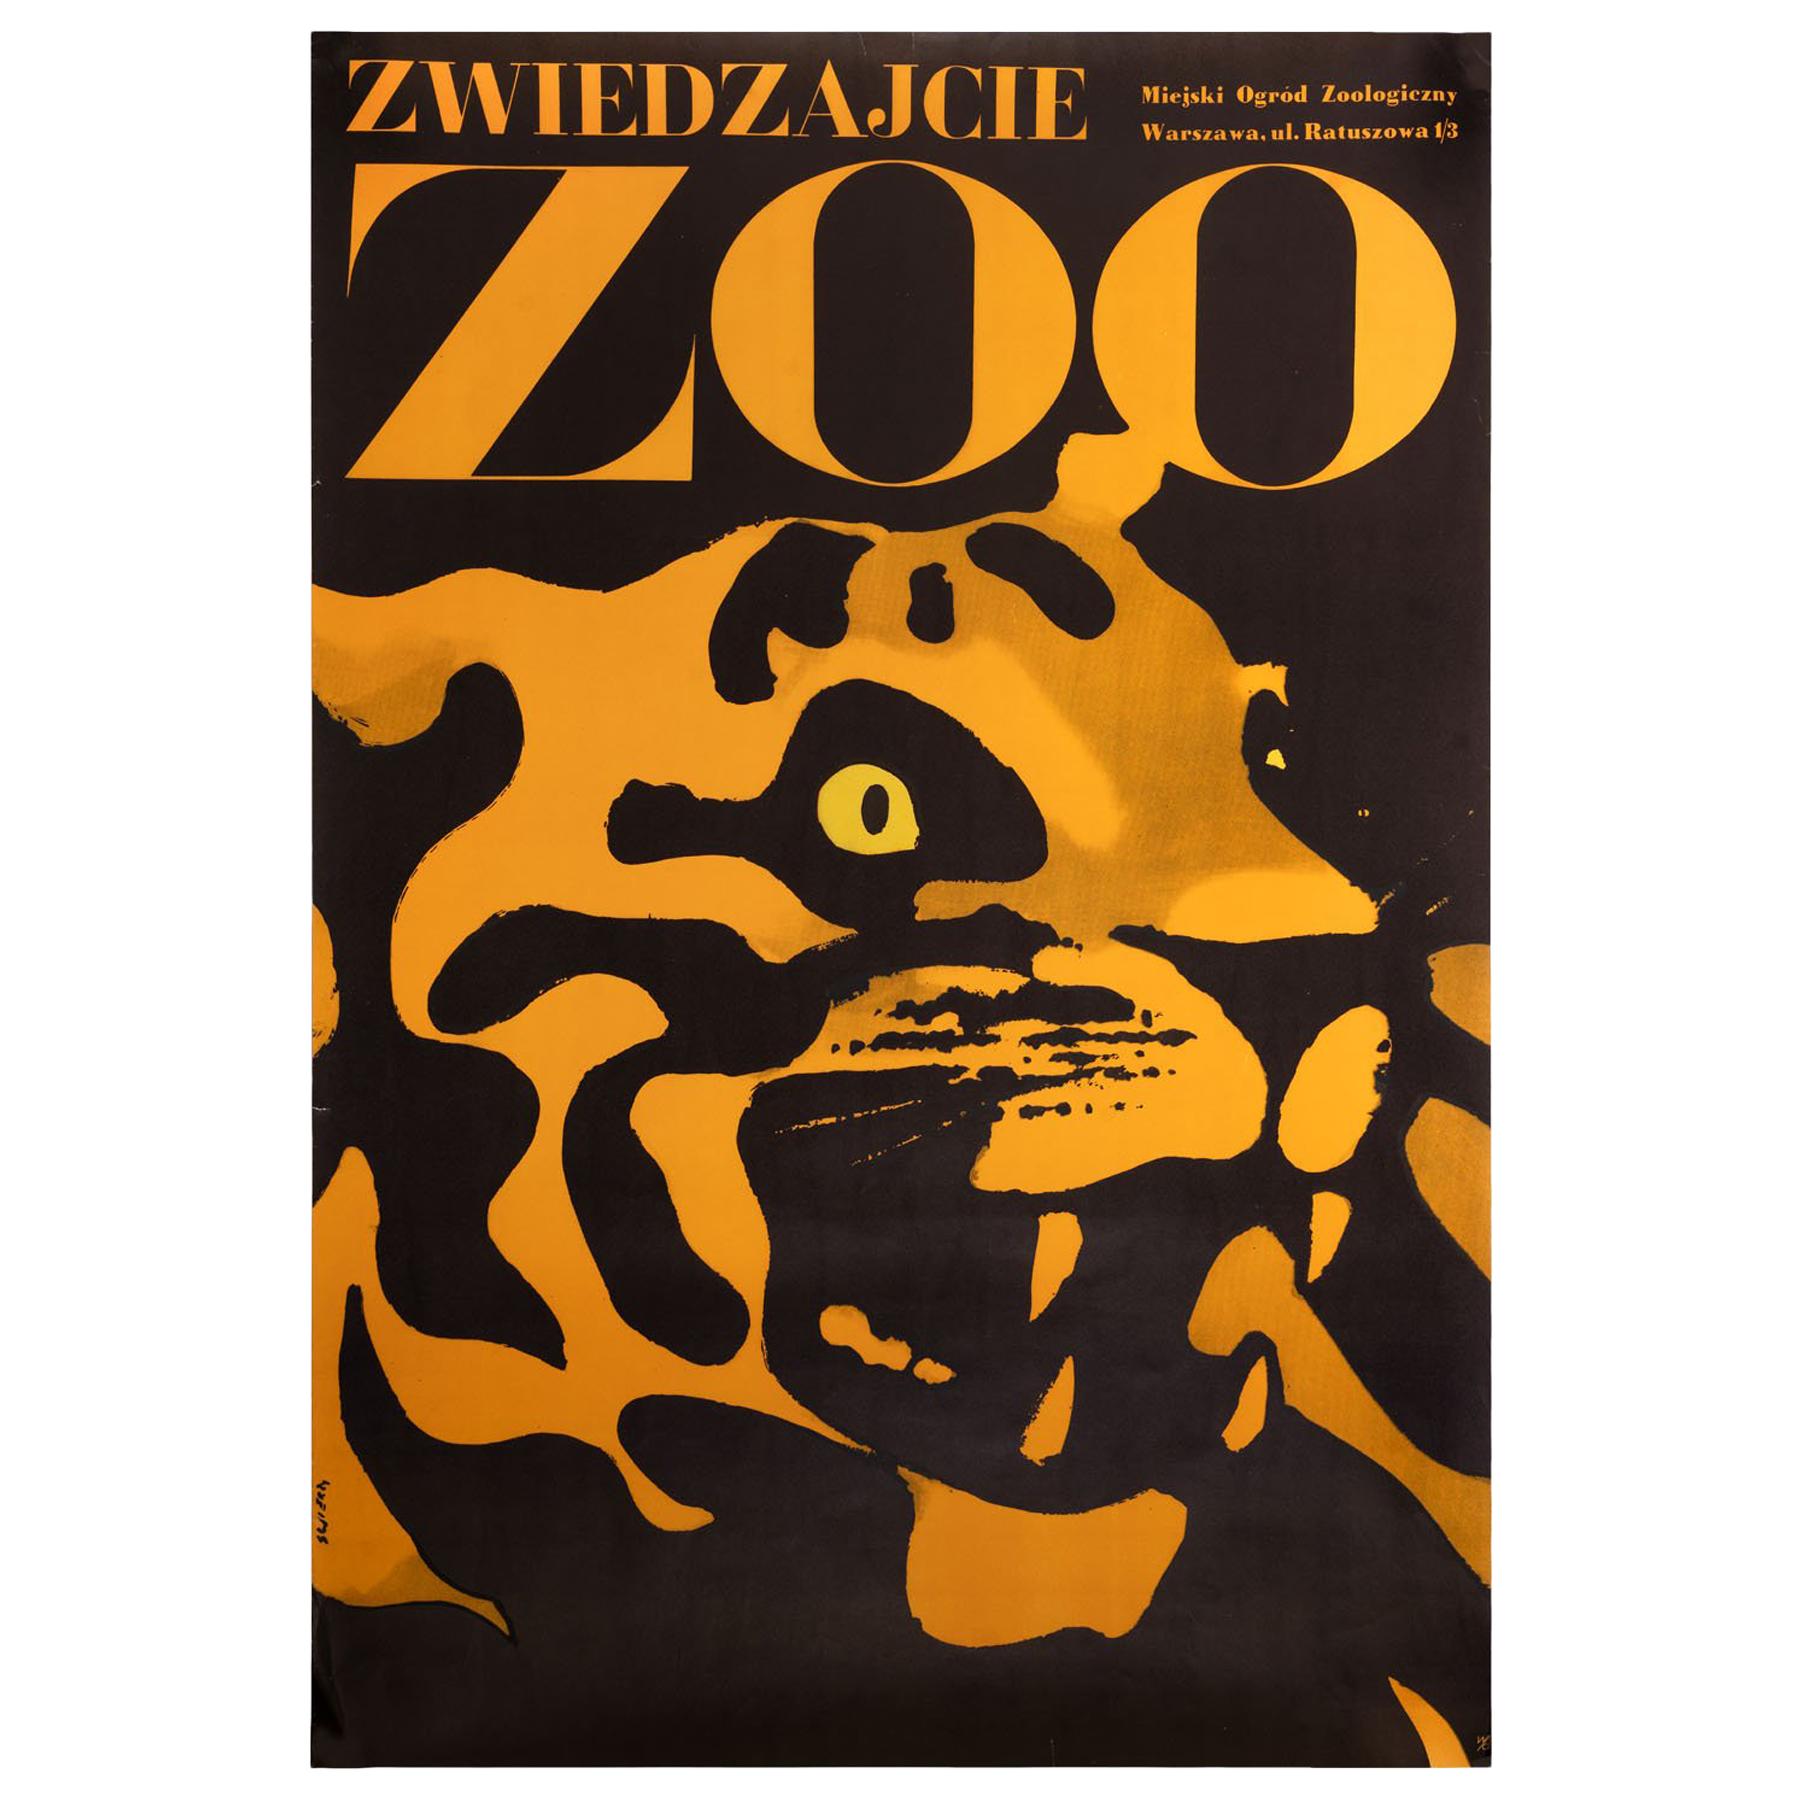 Zwiedzajcie Zoo Original Polish Poster, Waldemar Swierzy, 1967